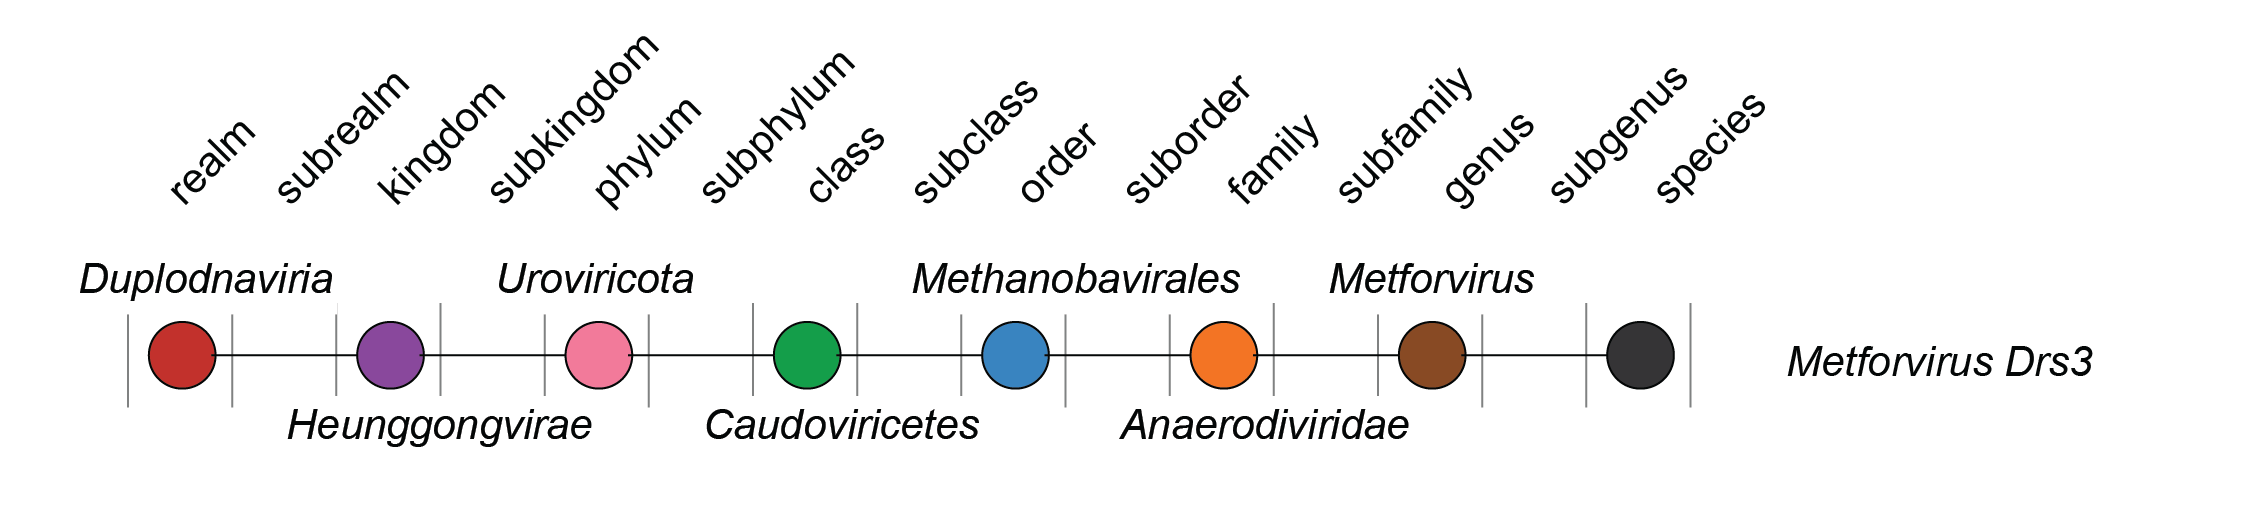 Anaerodiviridae taxa